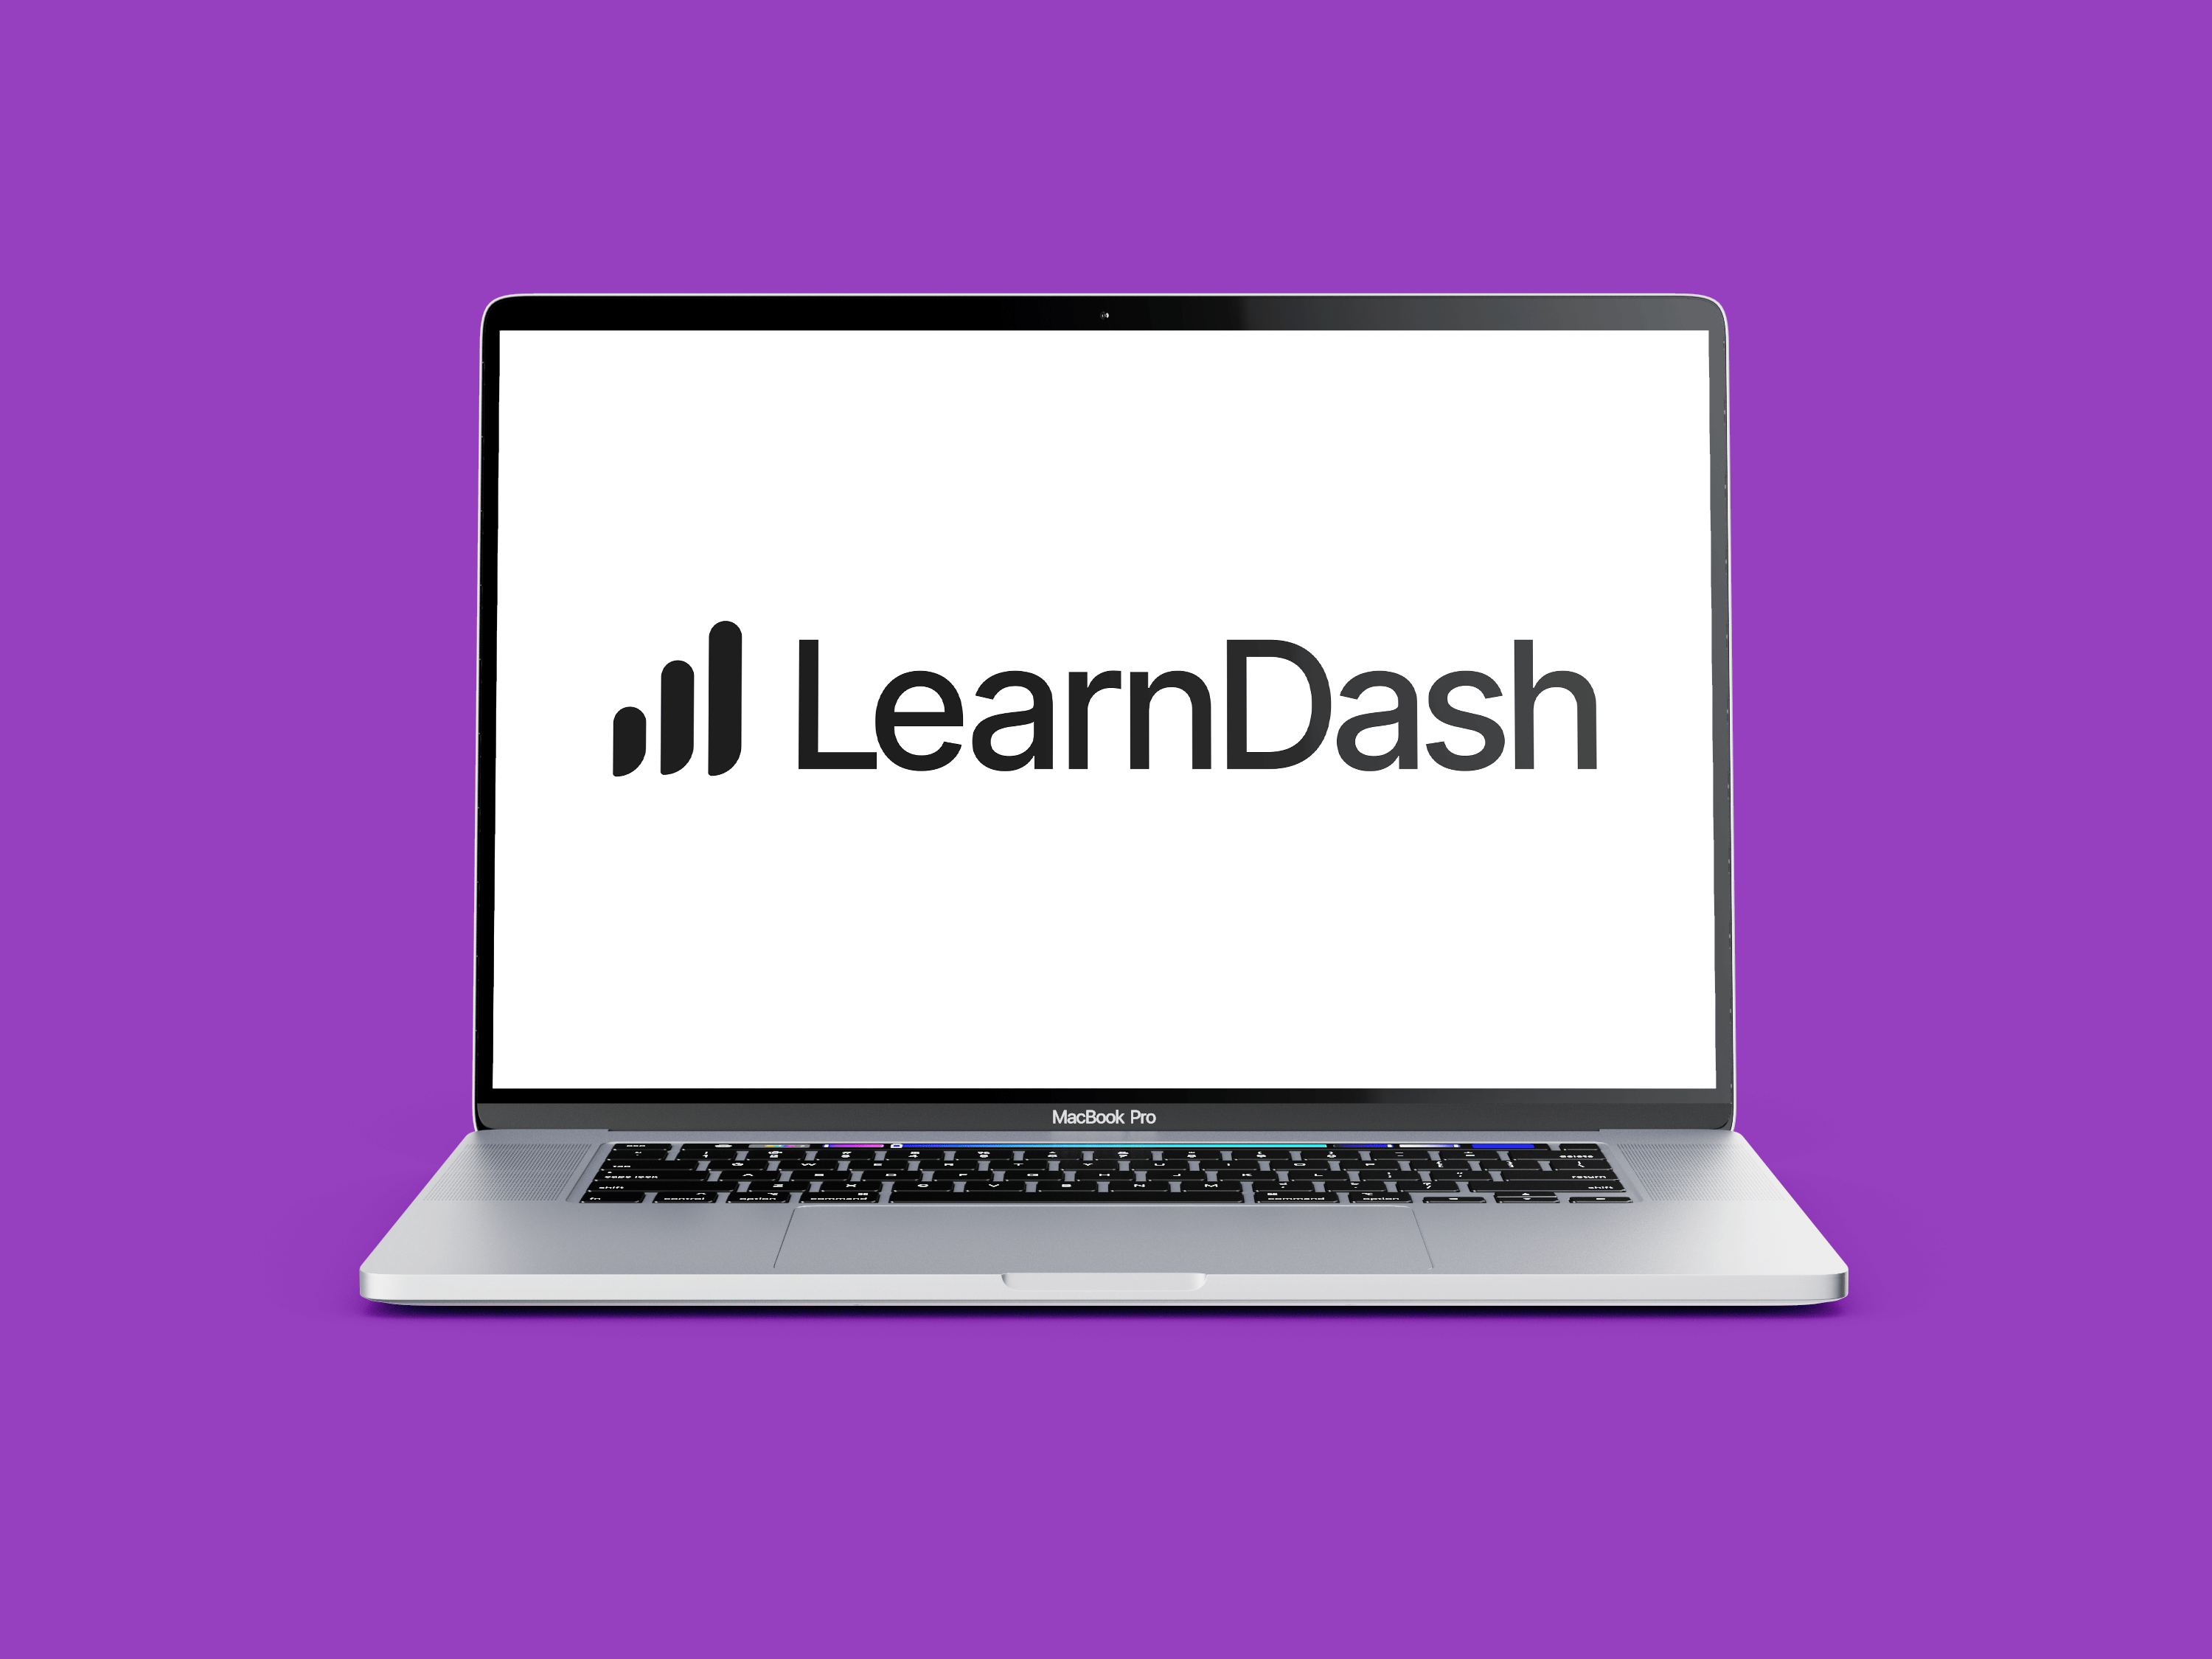 Learndash-laptop